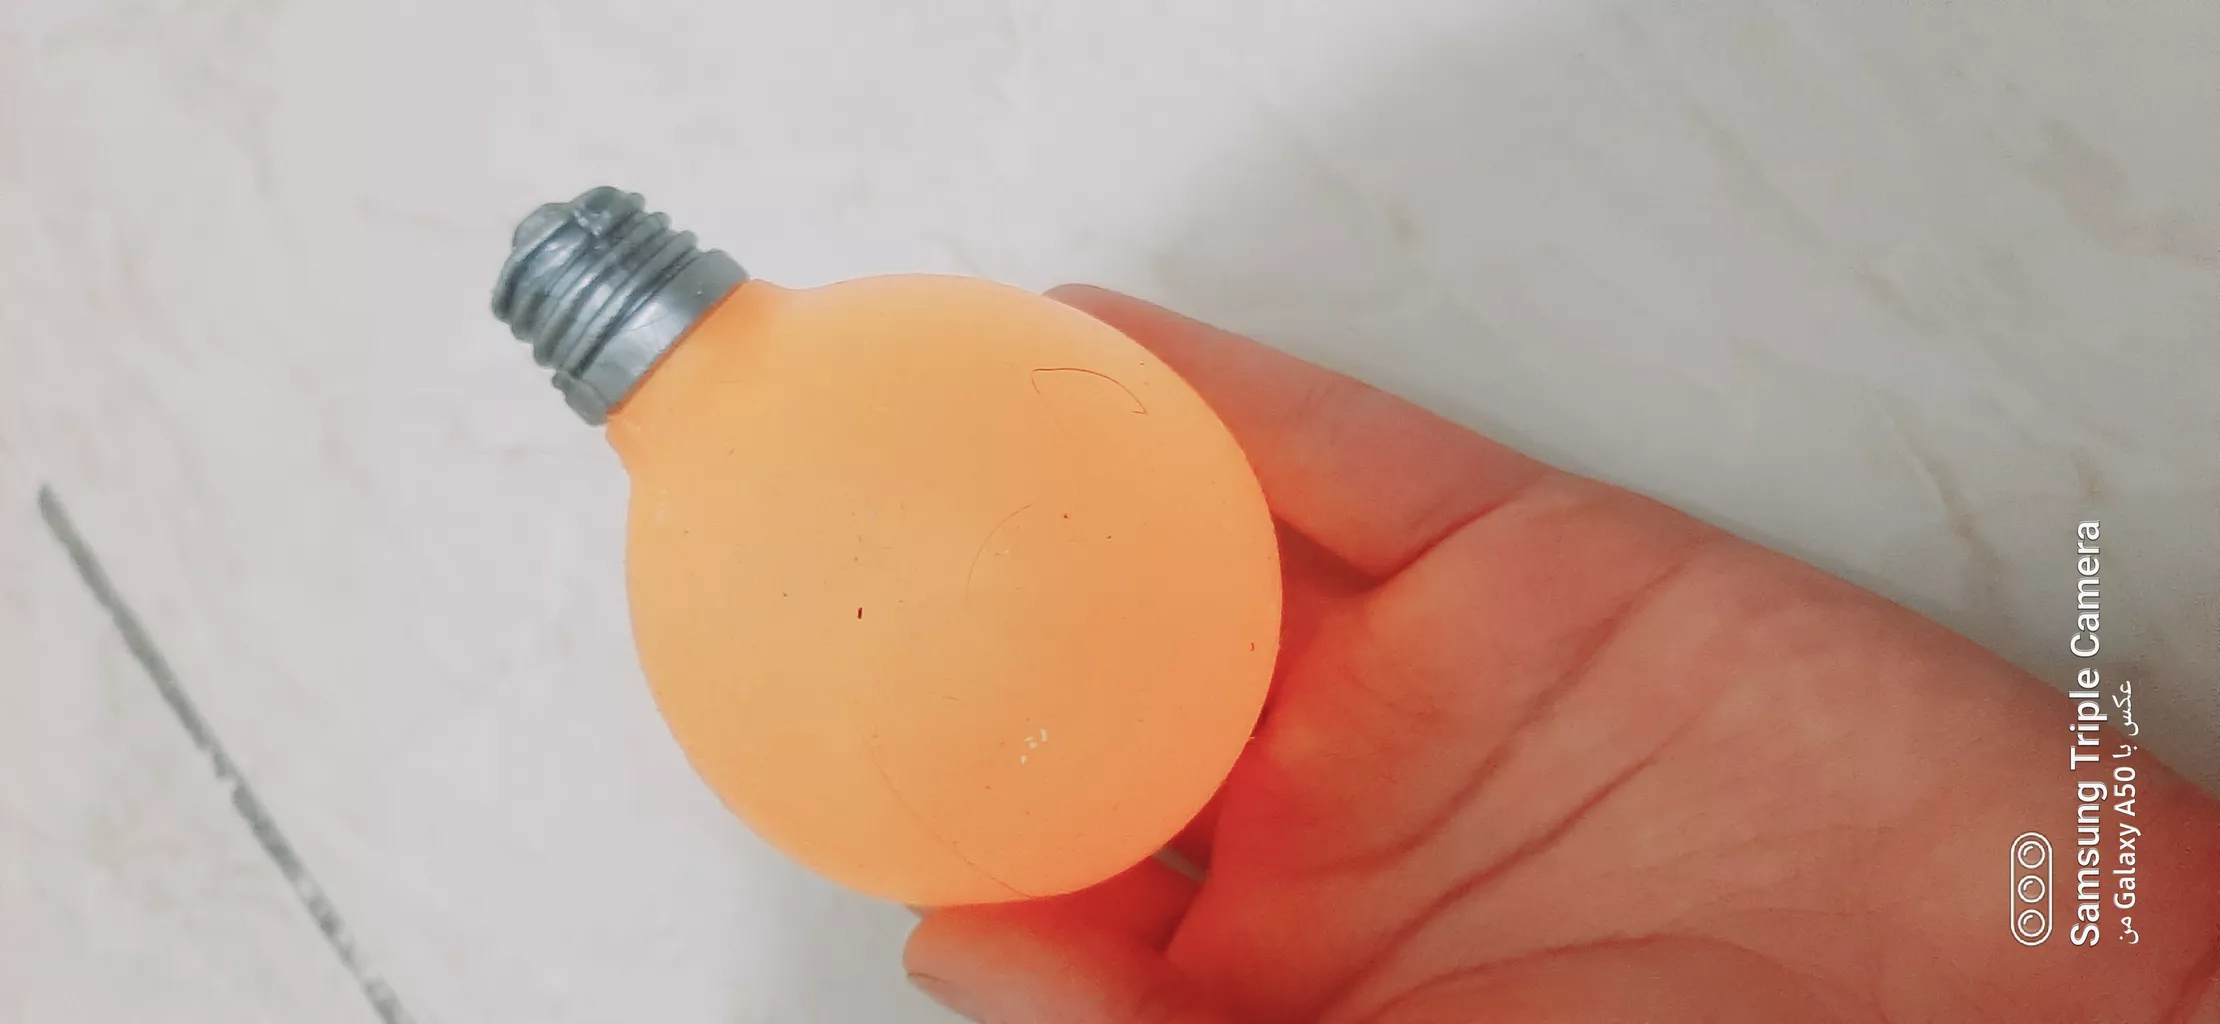 فیجت ضد استرس مدل له شو لامپ رنگی